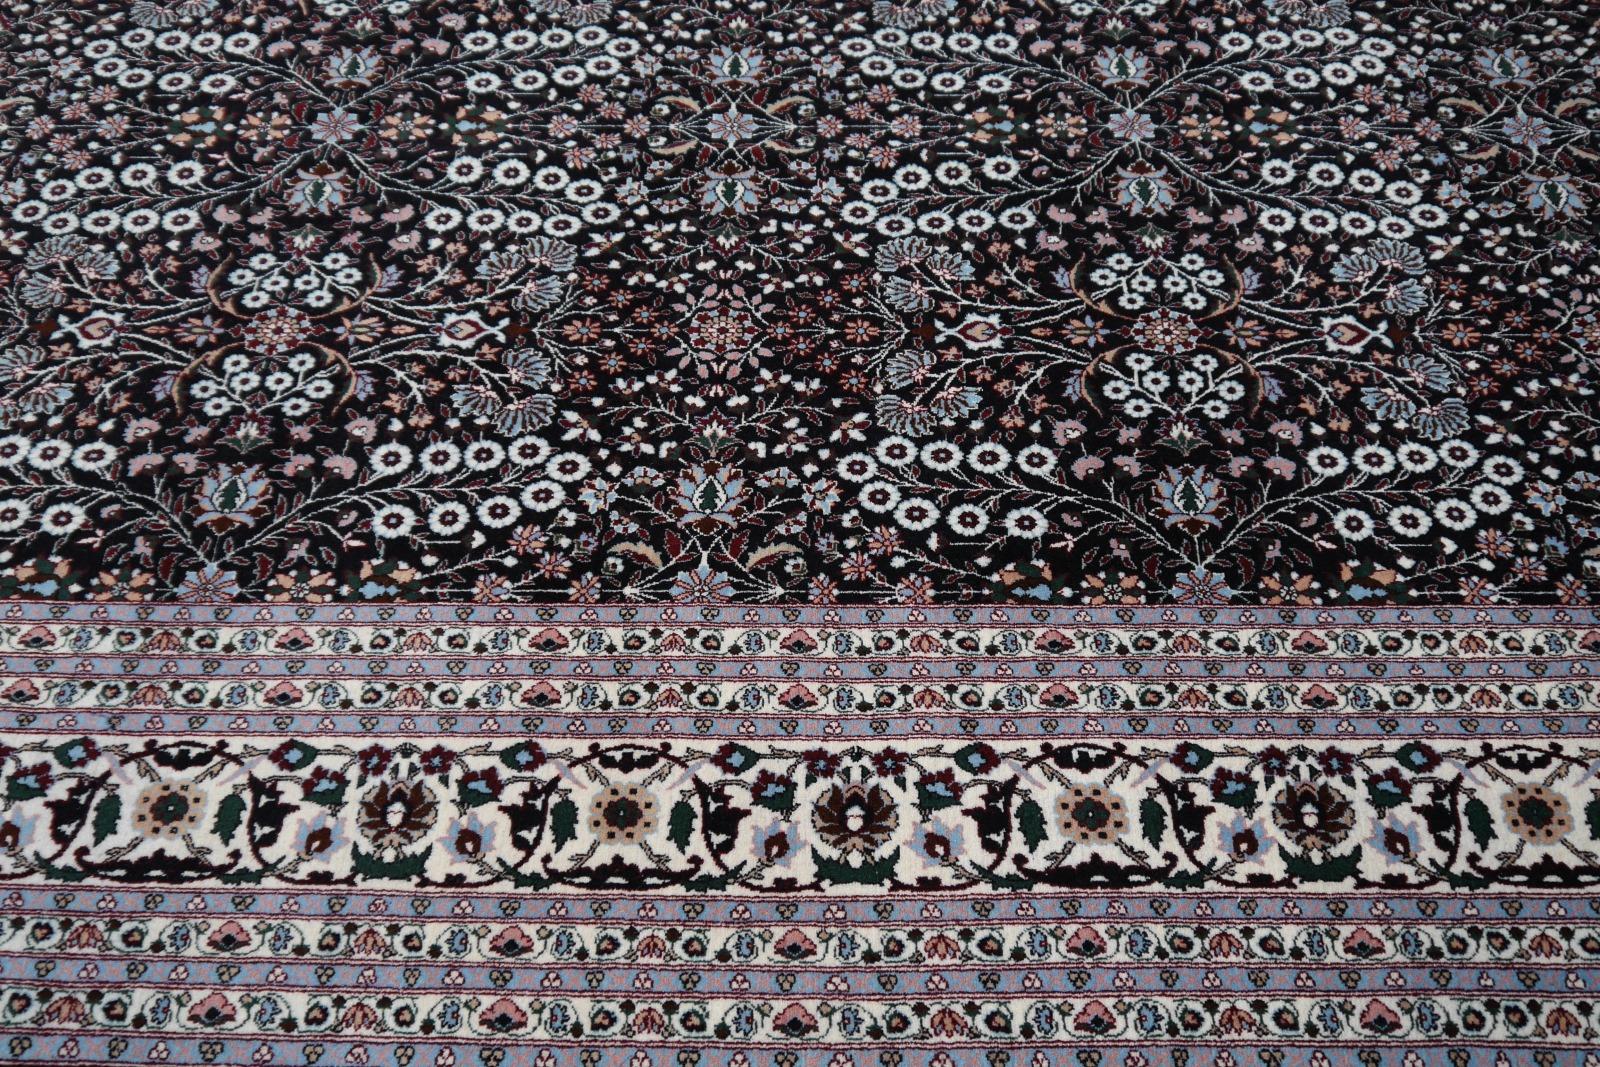 Wool Fine Turkish Hereke Rug Large Room Size Black Creme Blue Floral All-Over Design